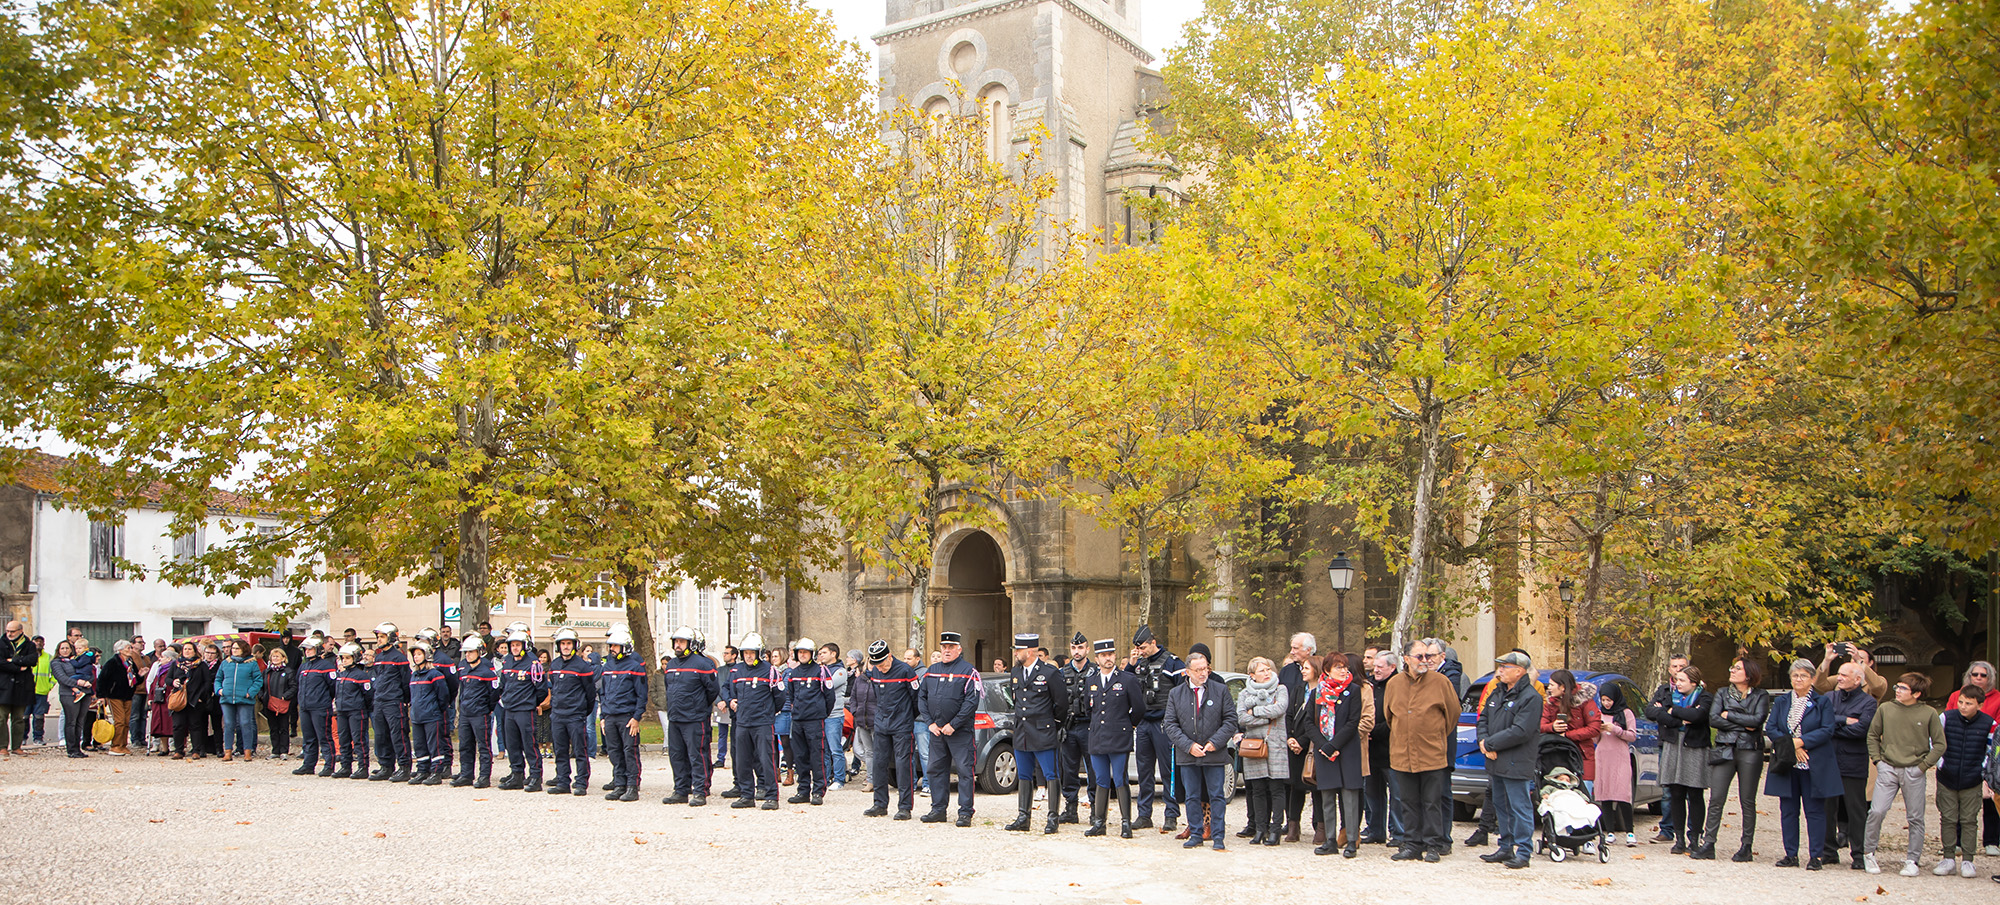 0 Sapeurs-pompiers gendarmes conseil municipal et public 1bis 111122.jpg